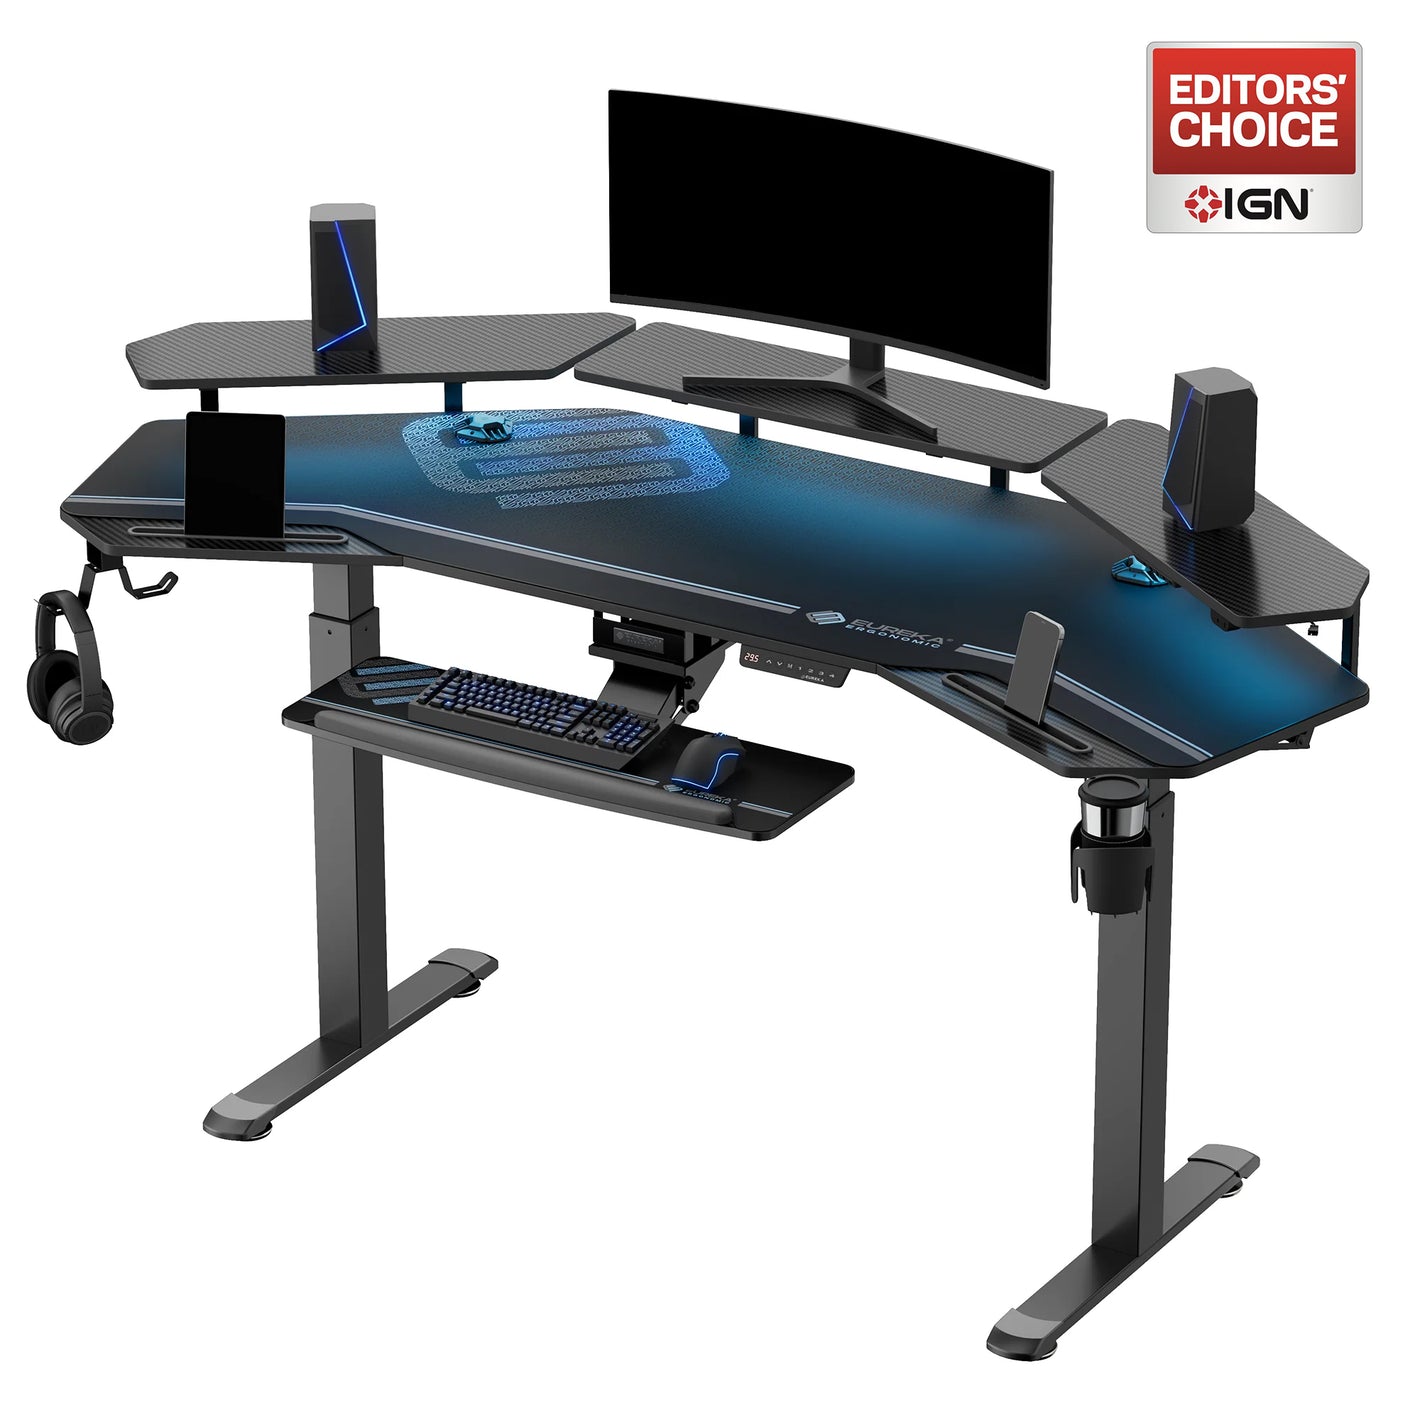 Eureka Ergonomic Black Gaming Standing Desk with Keyboard Tray